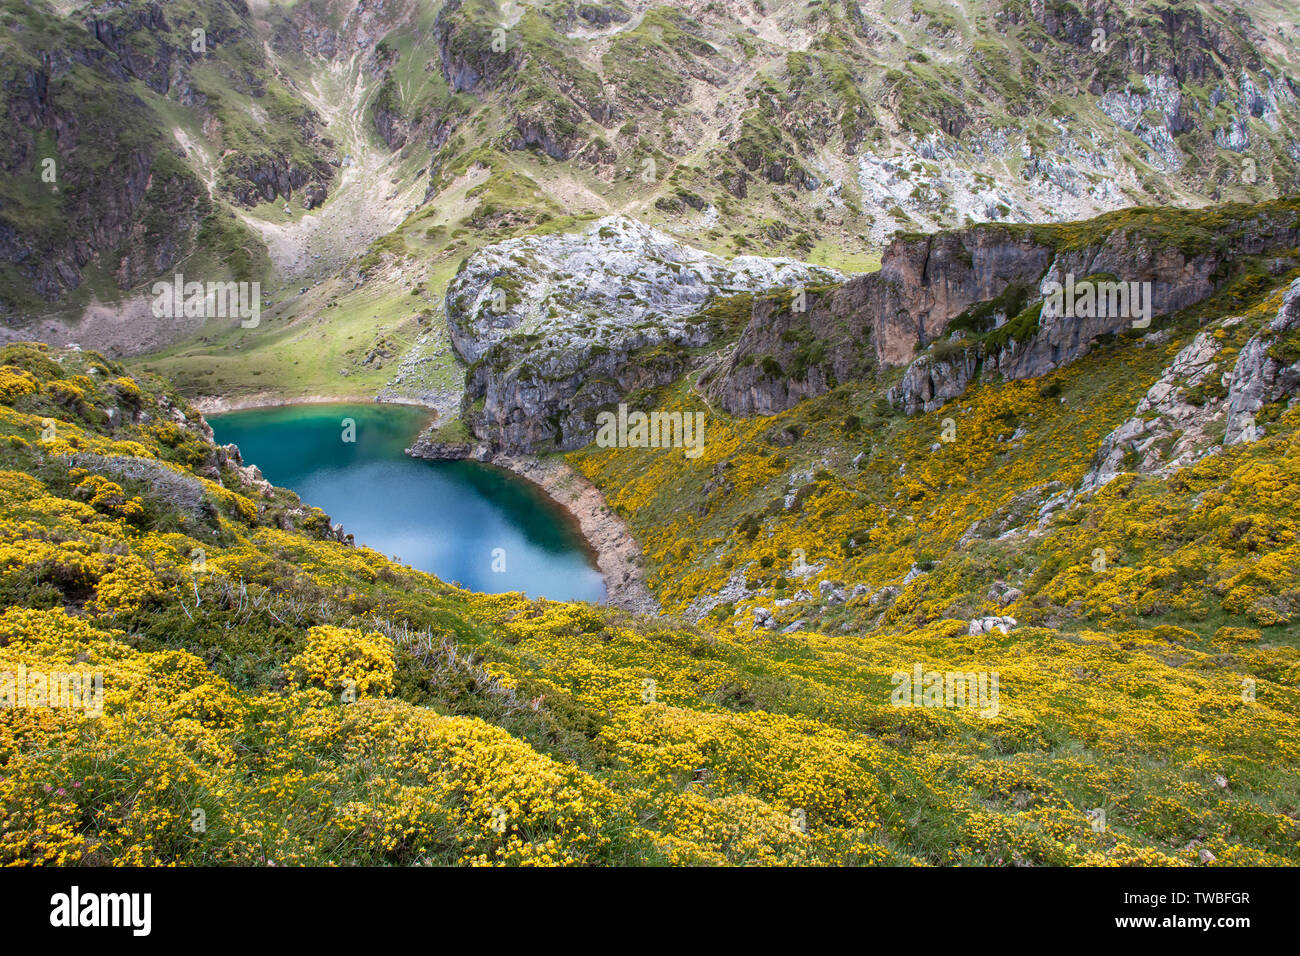 Calabazosa Lake dans le parc national de Somiedo, Asturies, Espagne. Saliencia Lacs de montagne. Genista occidentalis fleurs jaunes. L'eau bleu foncé. Banque D'Images